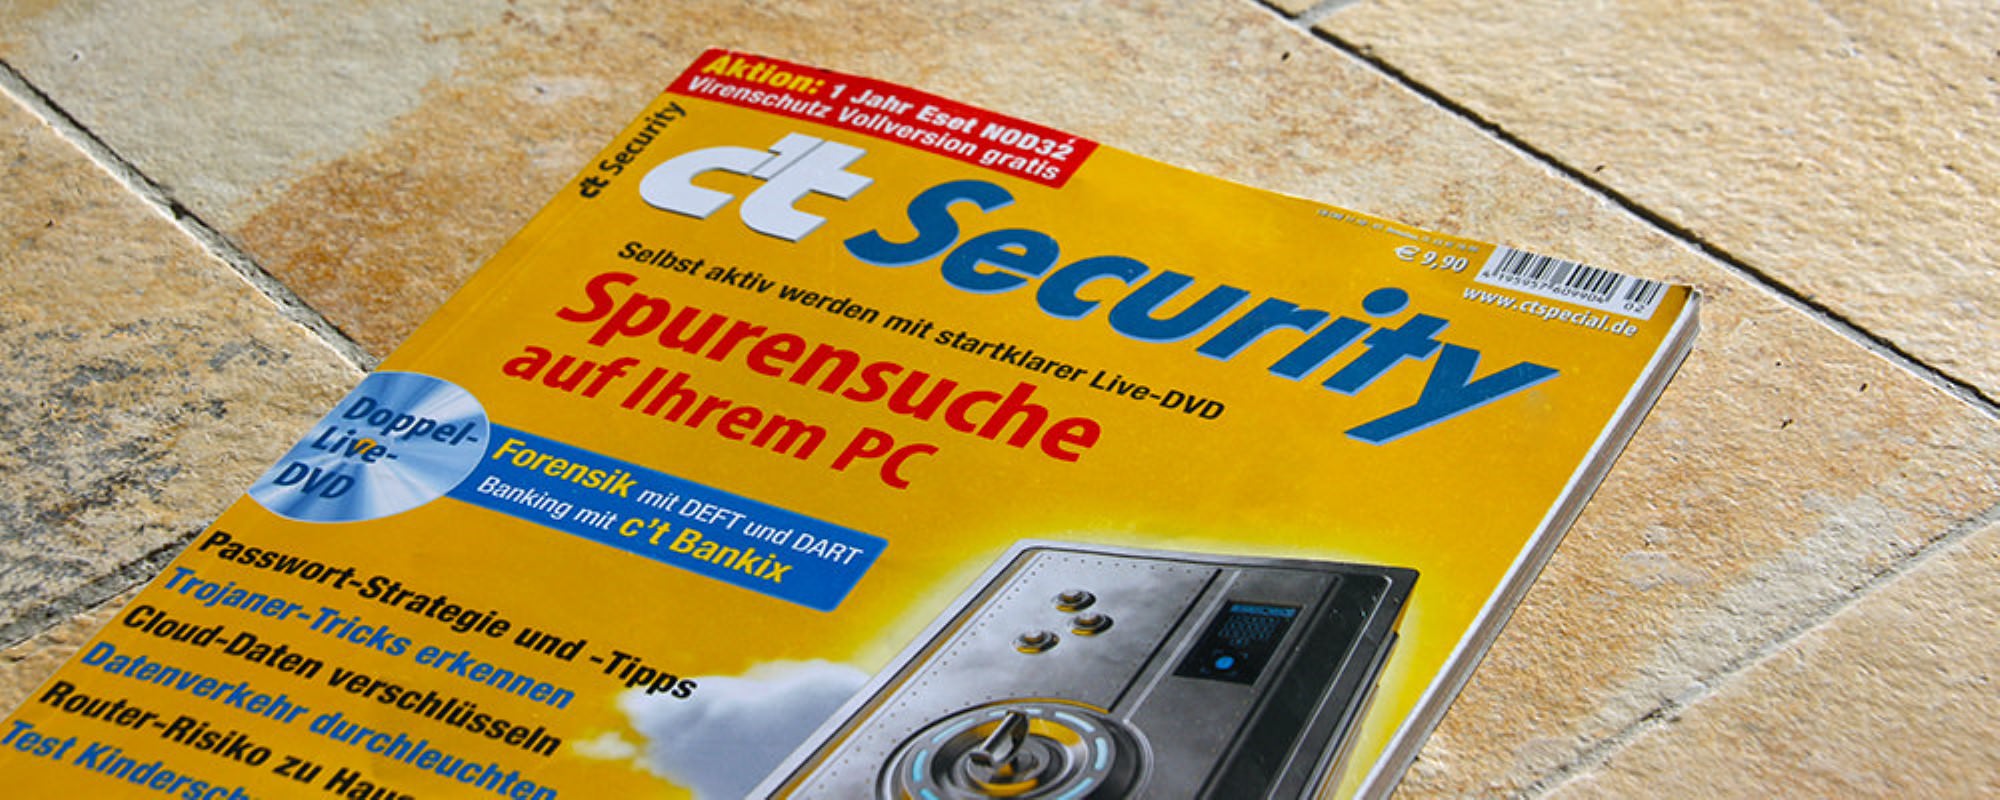 c't Security 2014